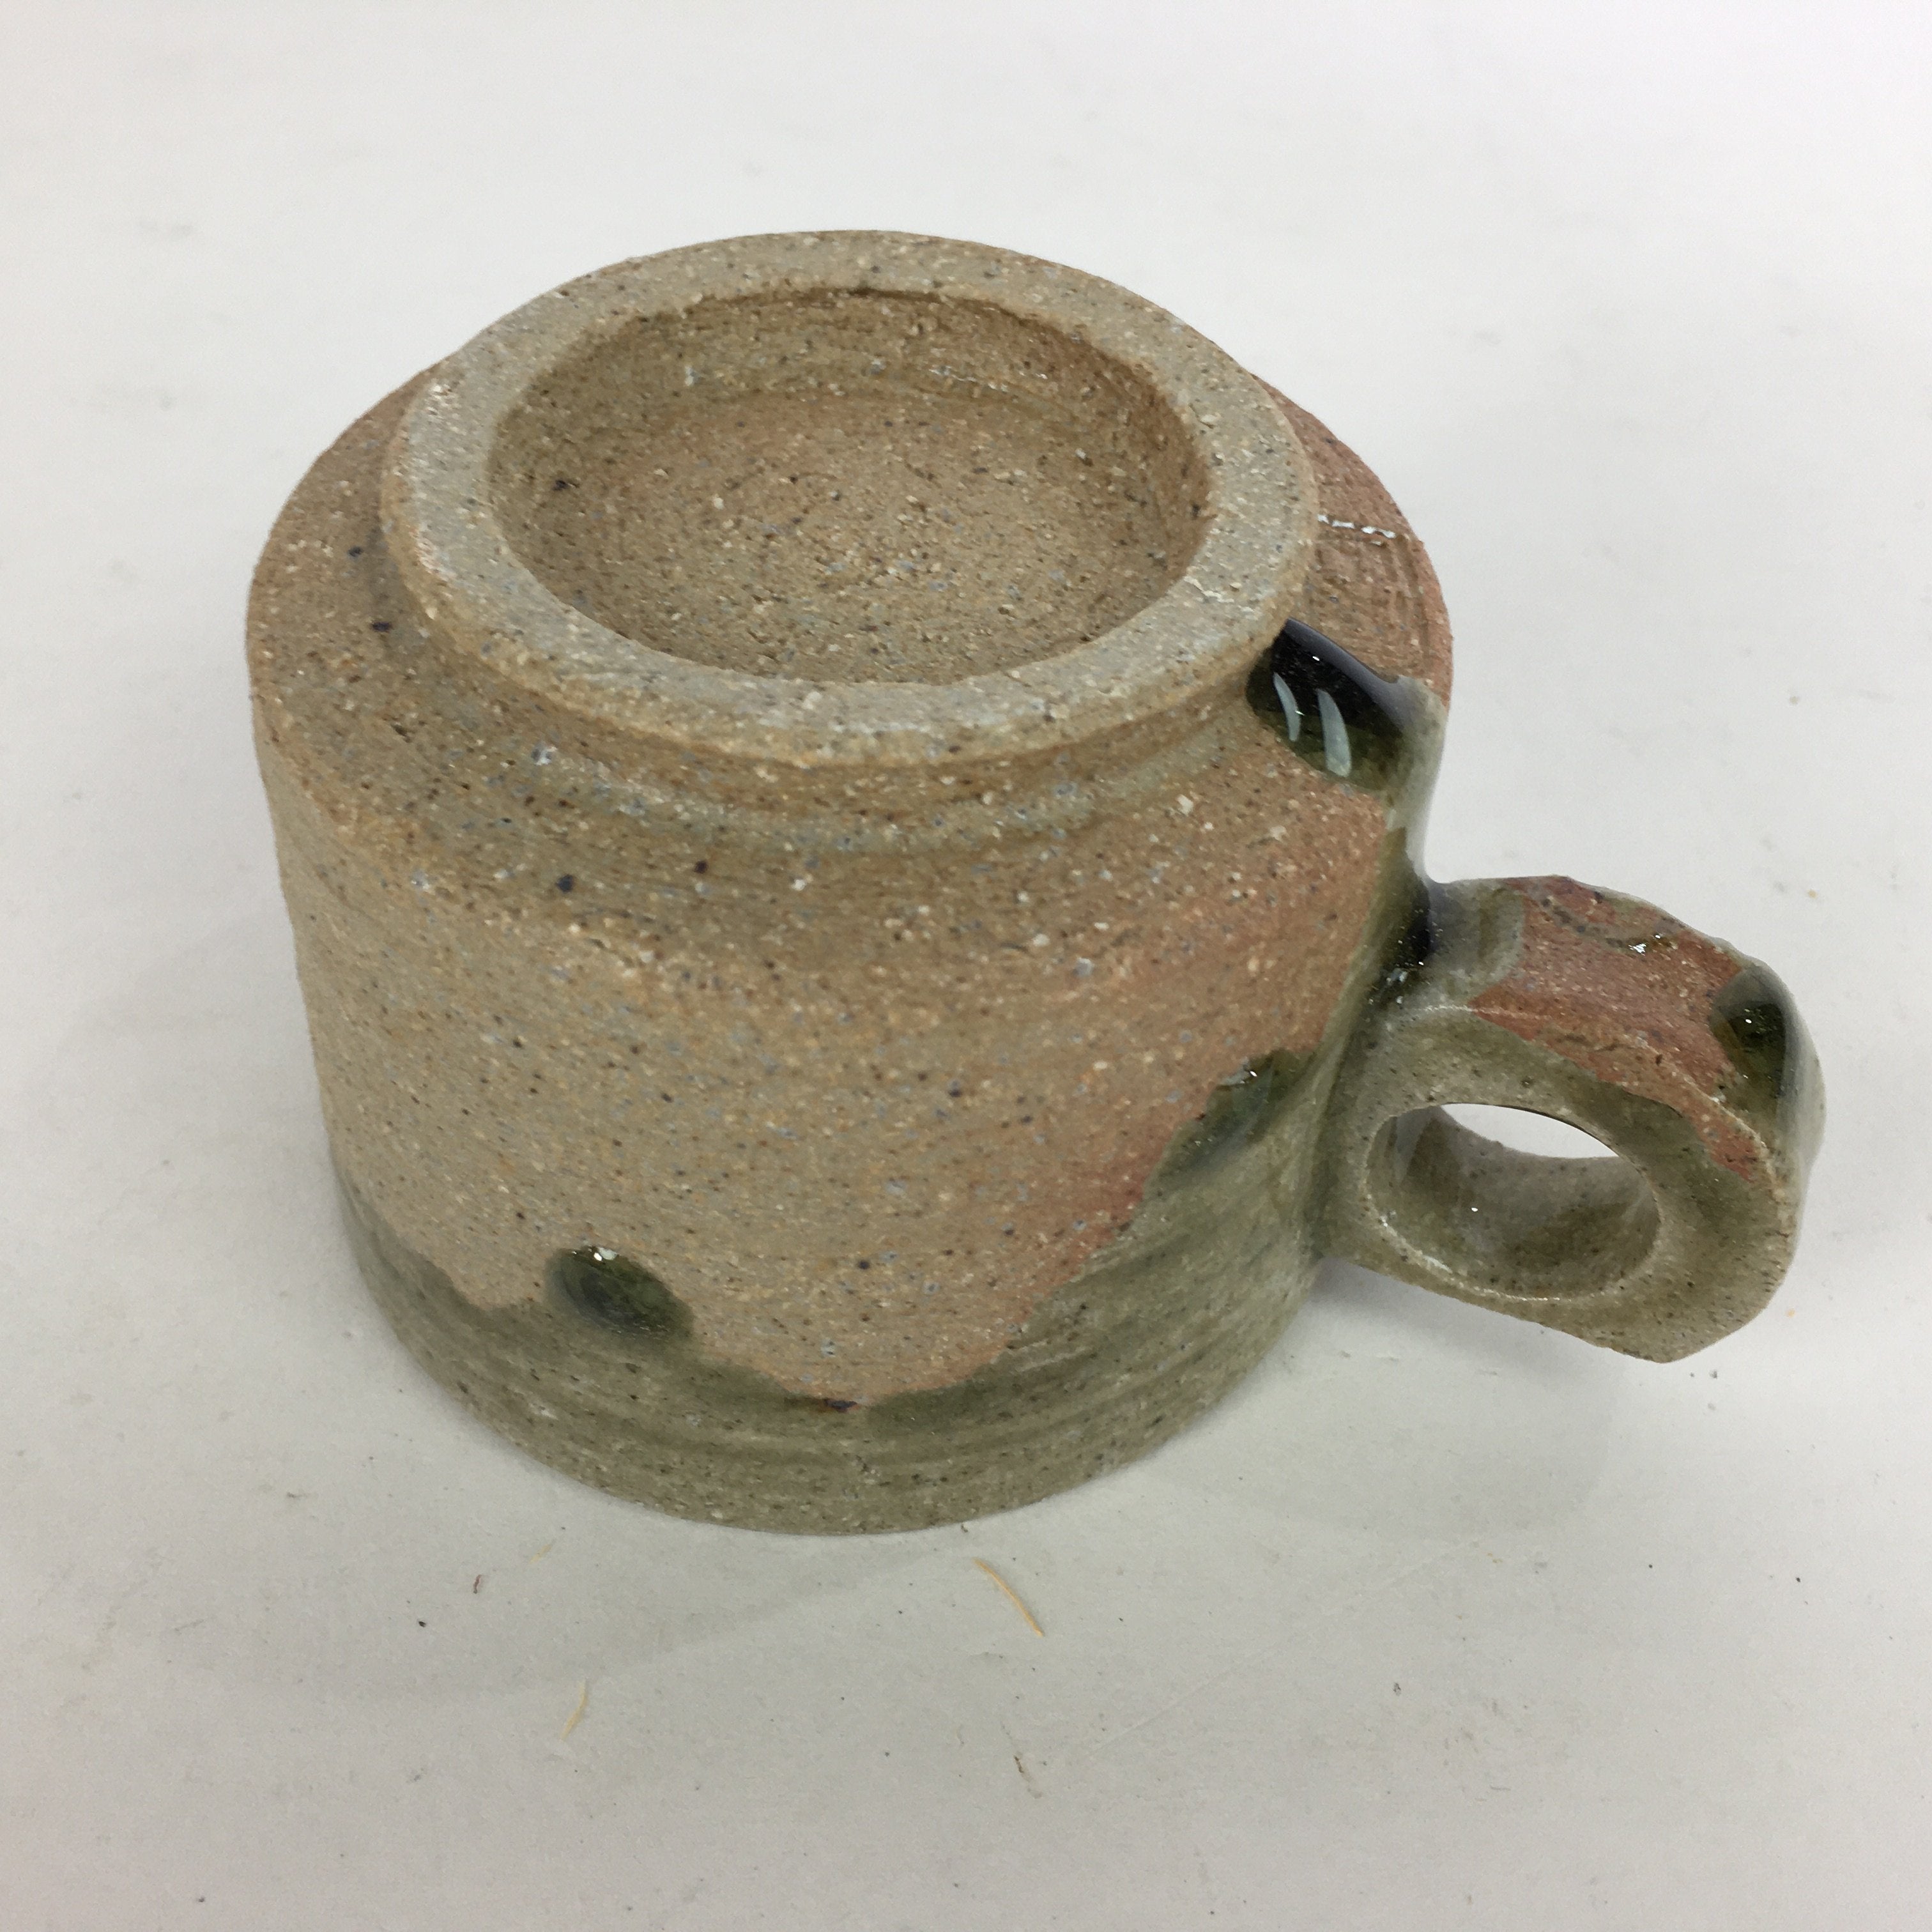 Japanese Ceramic Igayaki Teacup Mug Saucer Vtg Cup Plate Set Green Glaze PP575